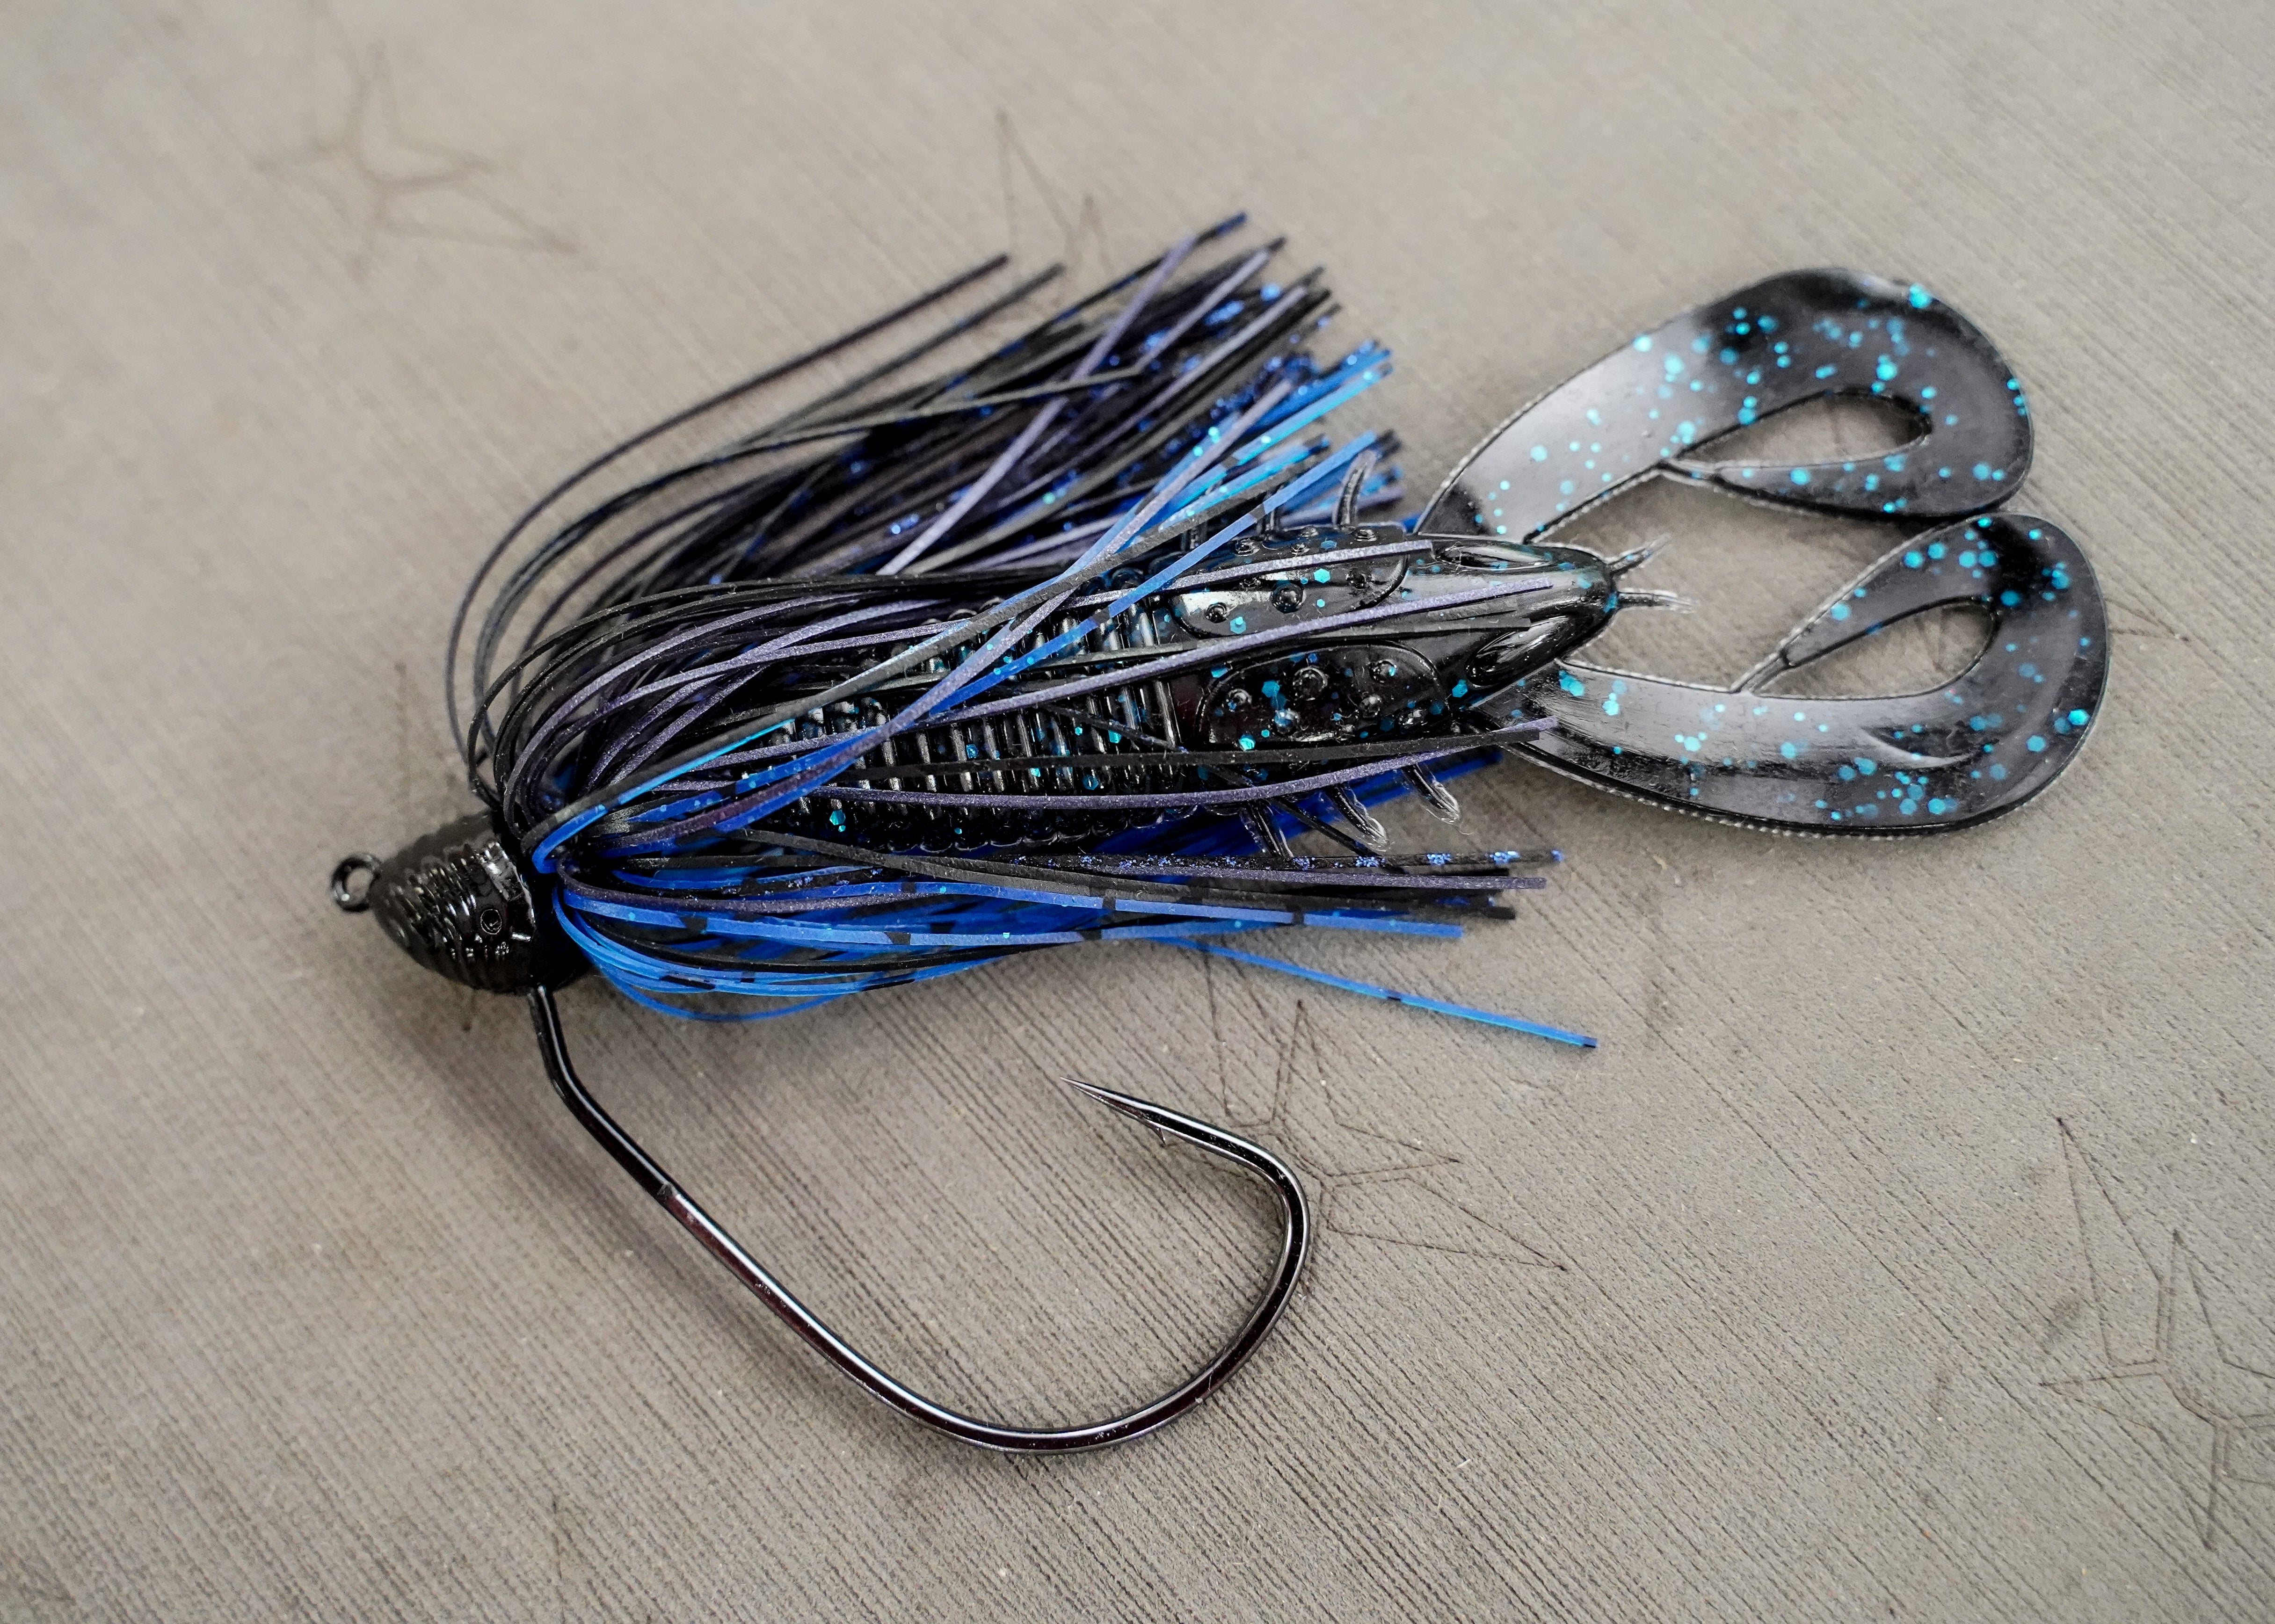 6th Sense Fishing - Axis - Black N Blue Craw